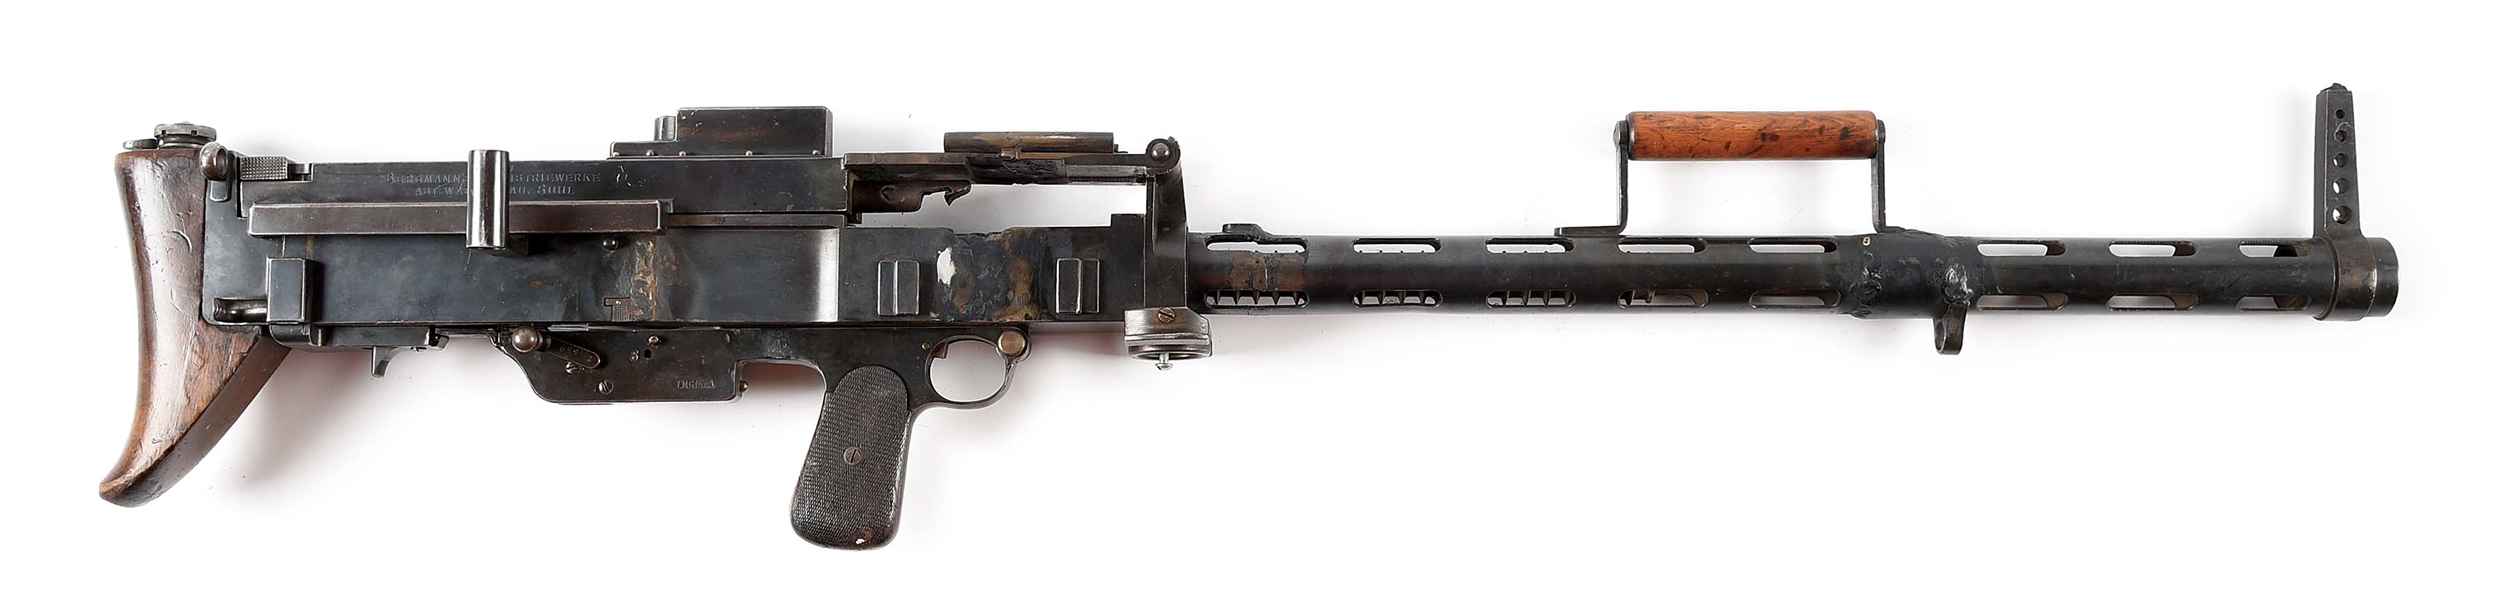 RARE GERMAN WORLD WAR I BERGMANN MG-15NA DISPLAY MACHINE GUN.